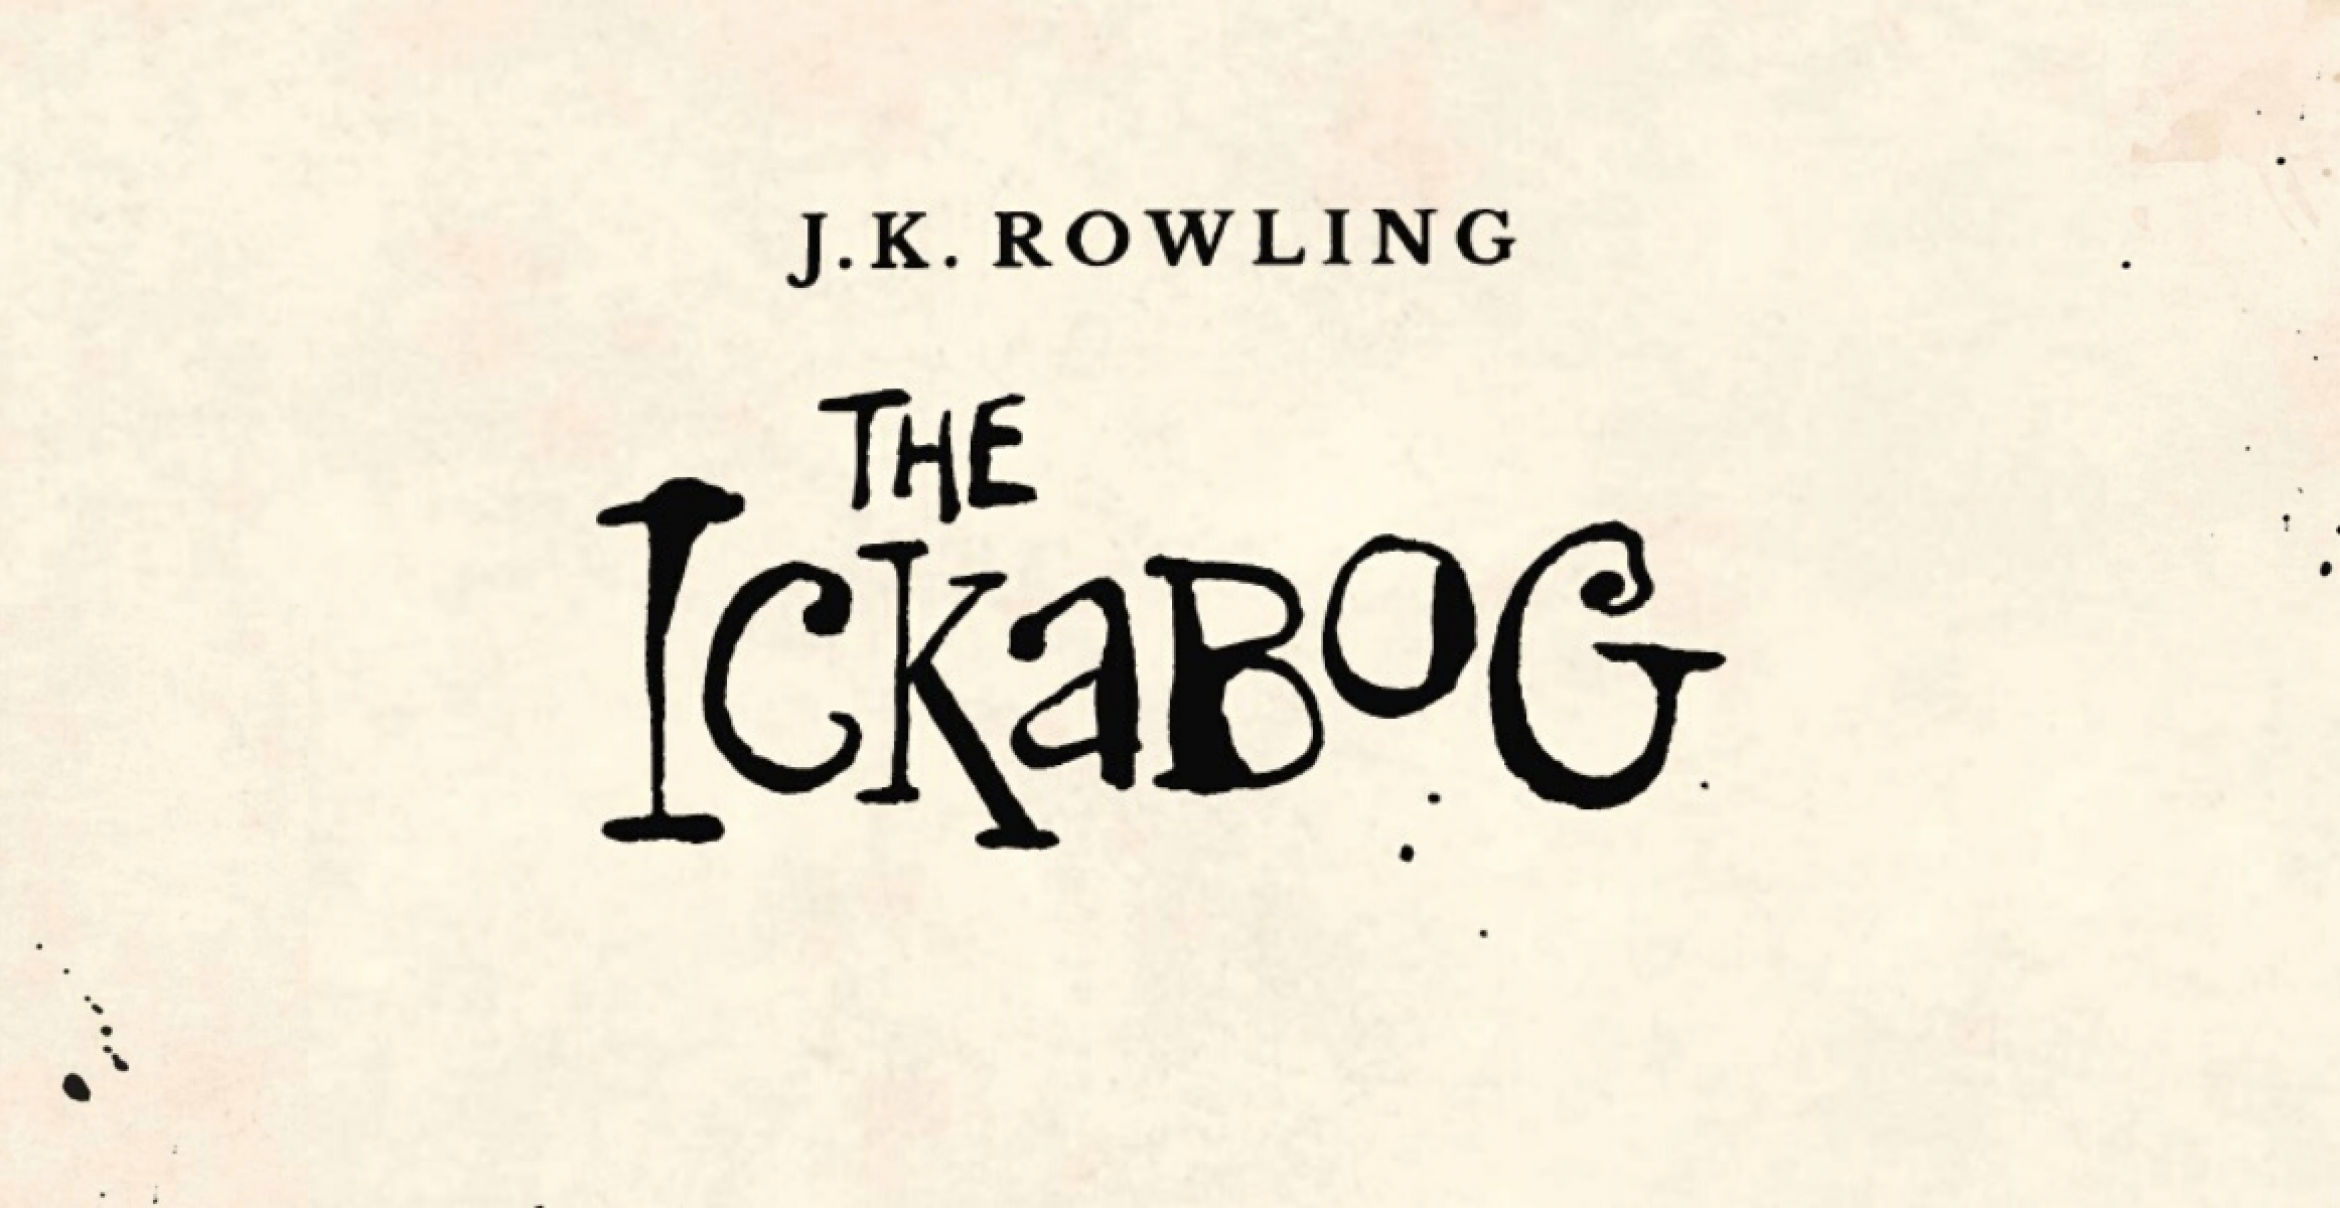 „The Ickabog“: J.K. Rowling veröffentlicht neues Buch – online und for free